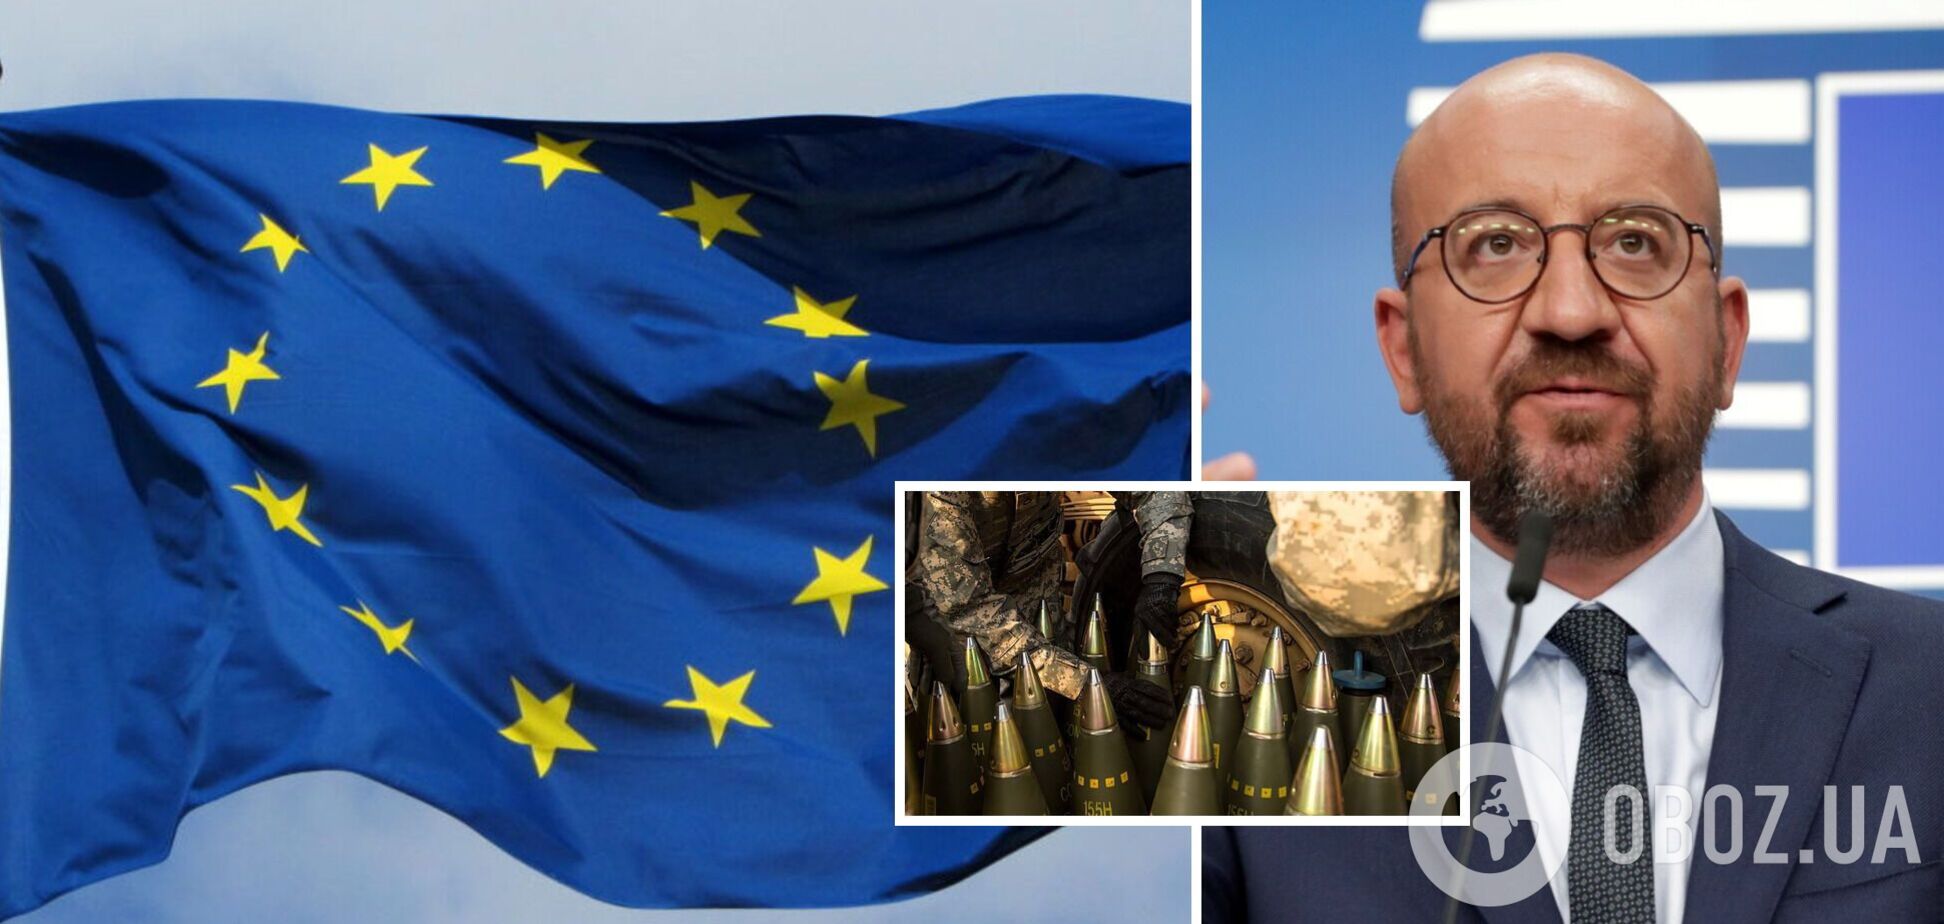 'Якщо ми хочемо миру, то повинні готуватися до війни': Мішель закликав ЄС перейти в режим військової економіки

